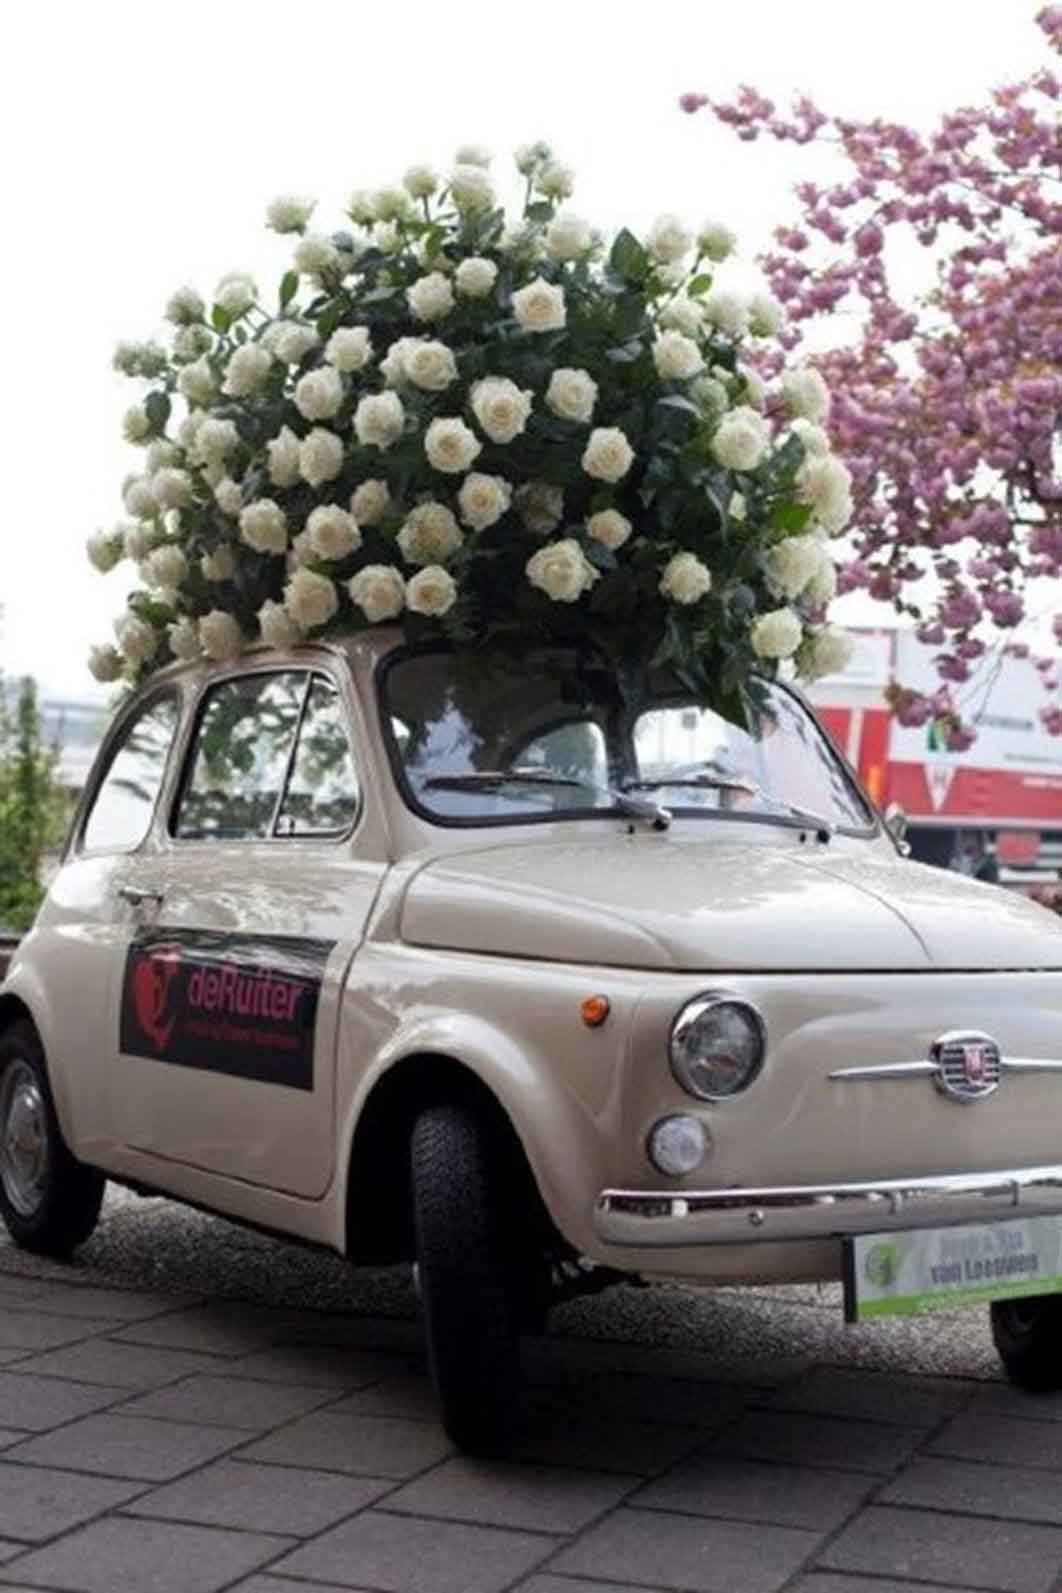 Wedding flowers on a car